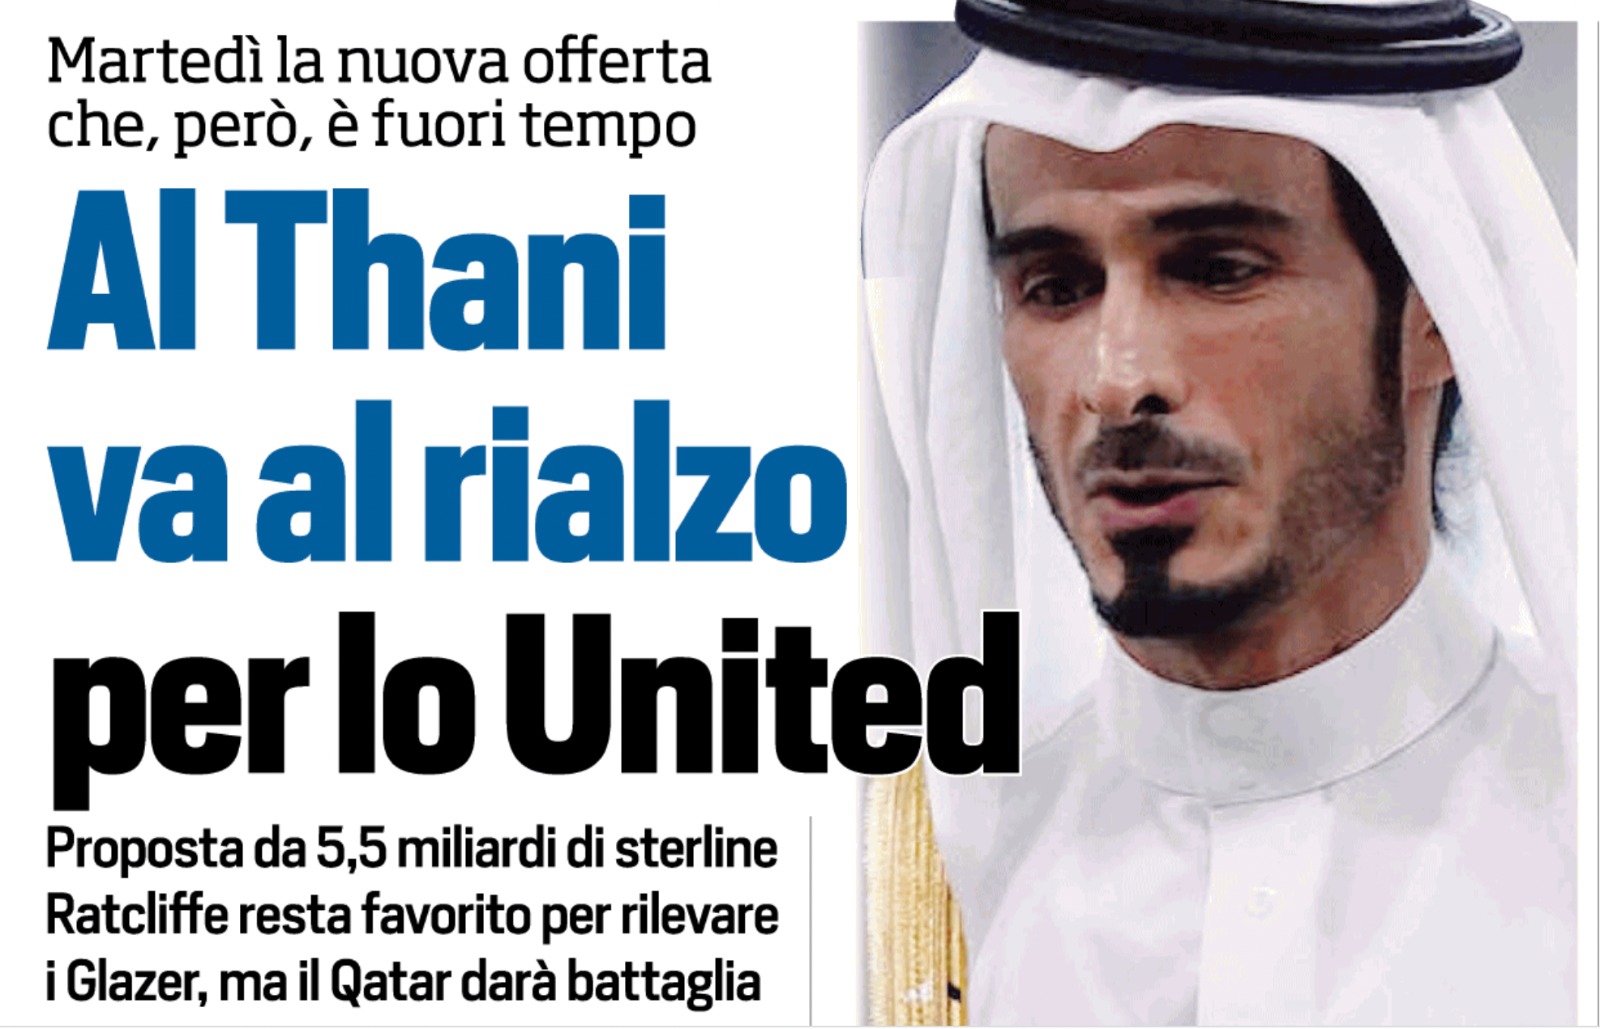 Cessione Sampdoria Manchester United Al Thani